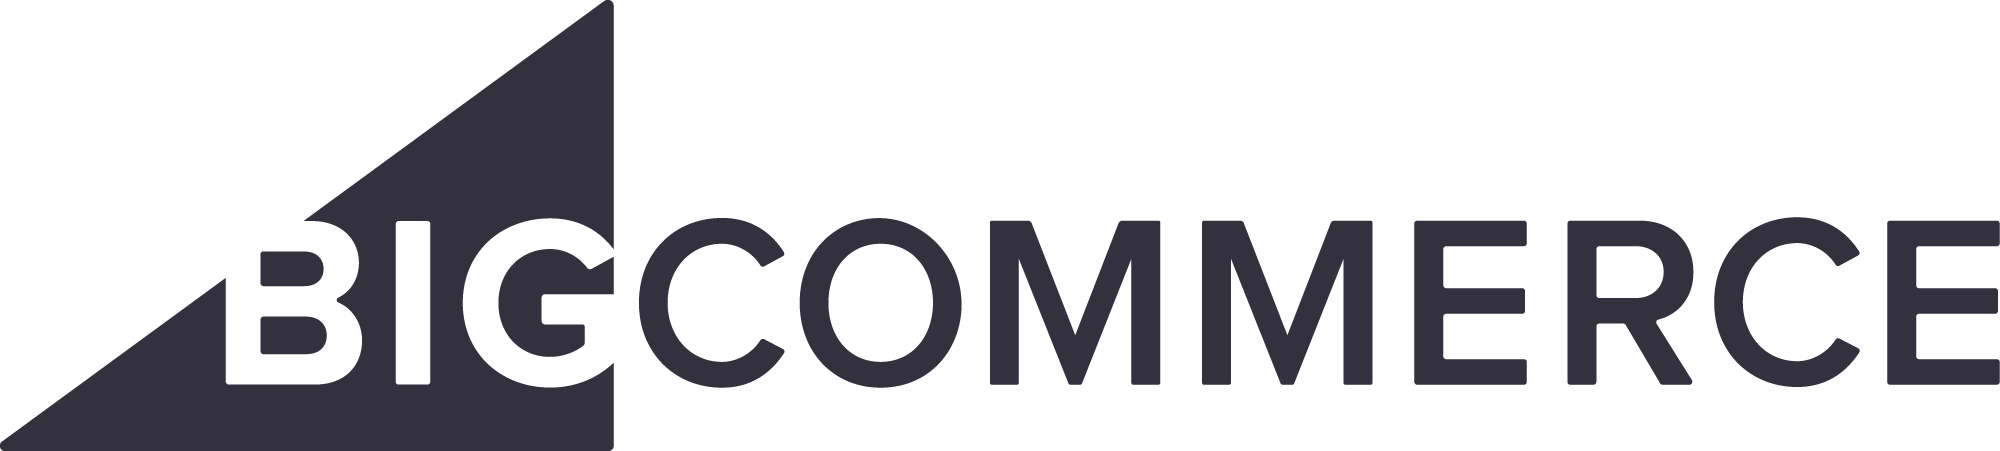 August 2016 BigCommerce-logo-dark